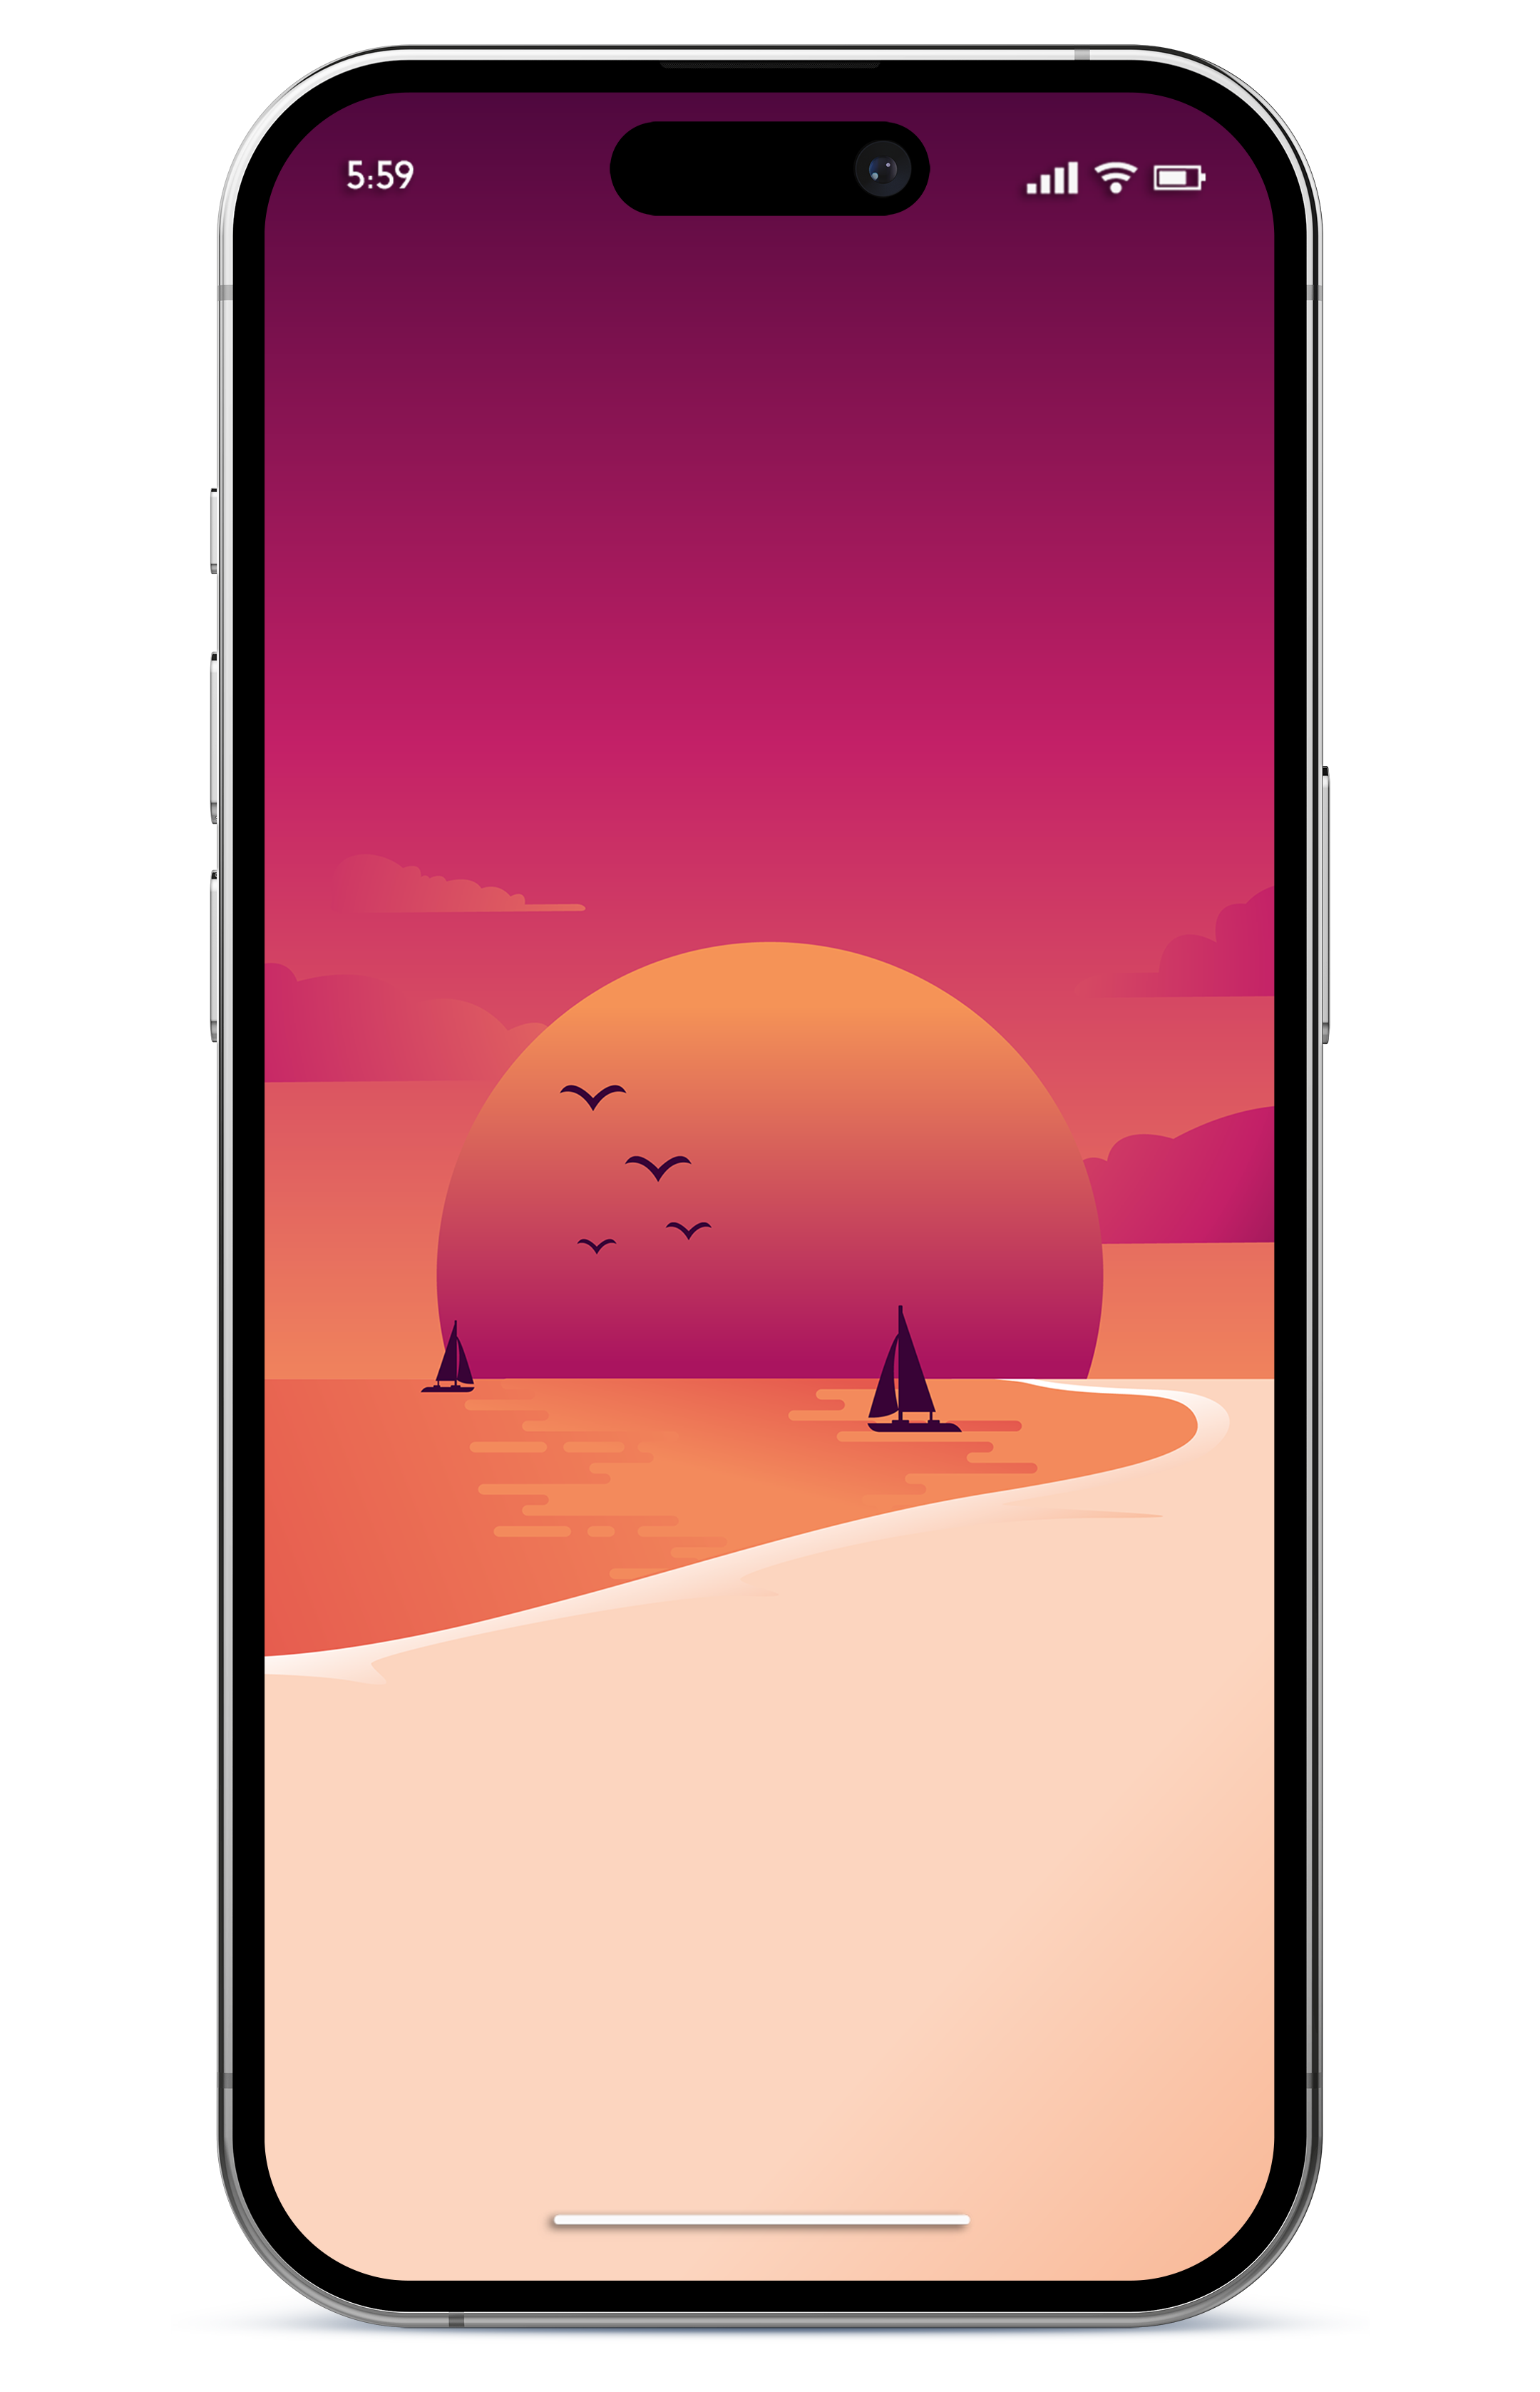 iphone wallpaper 4k summer sunset